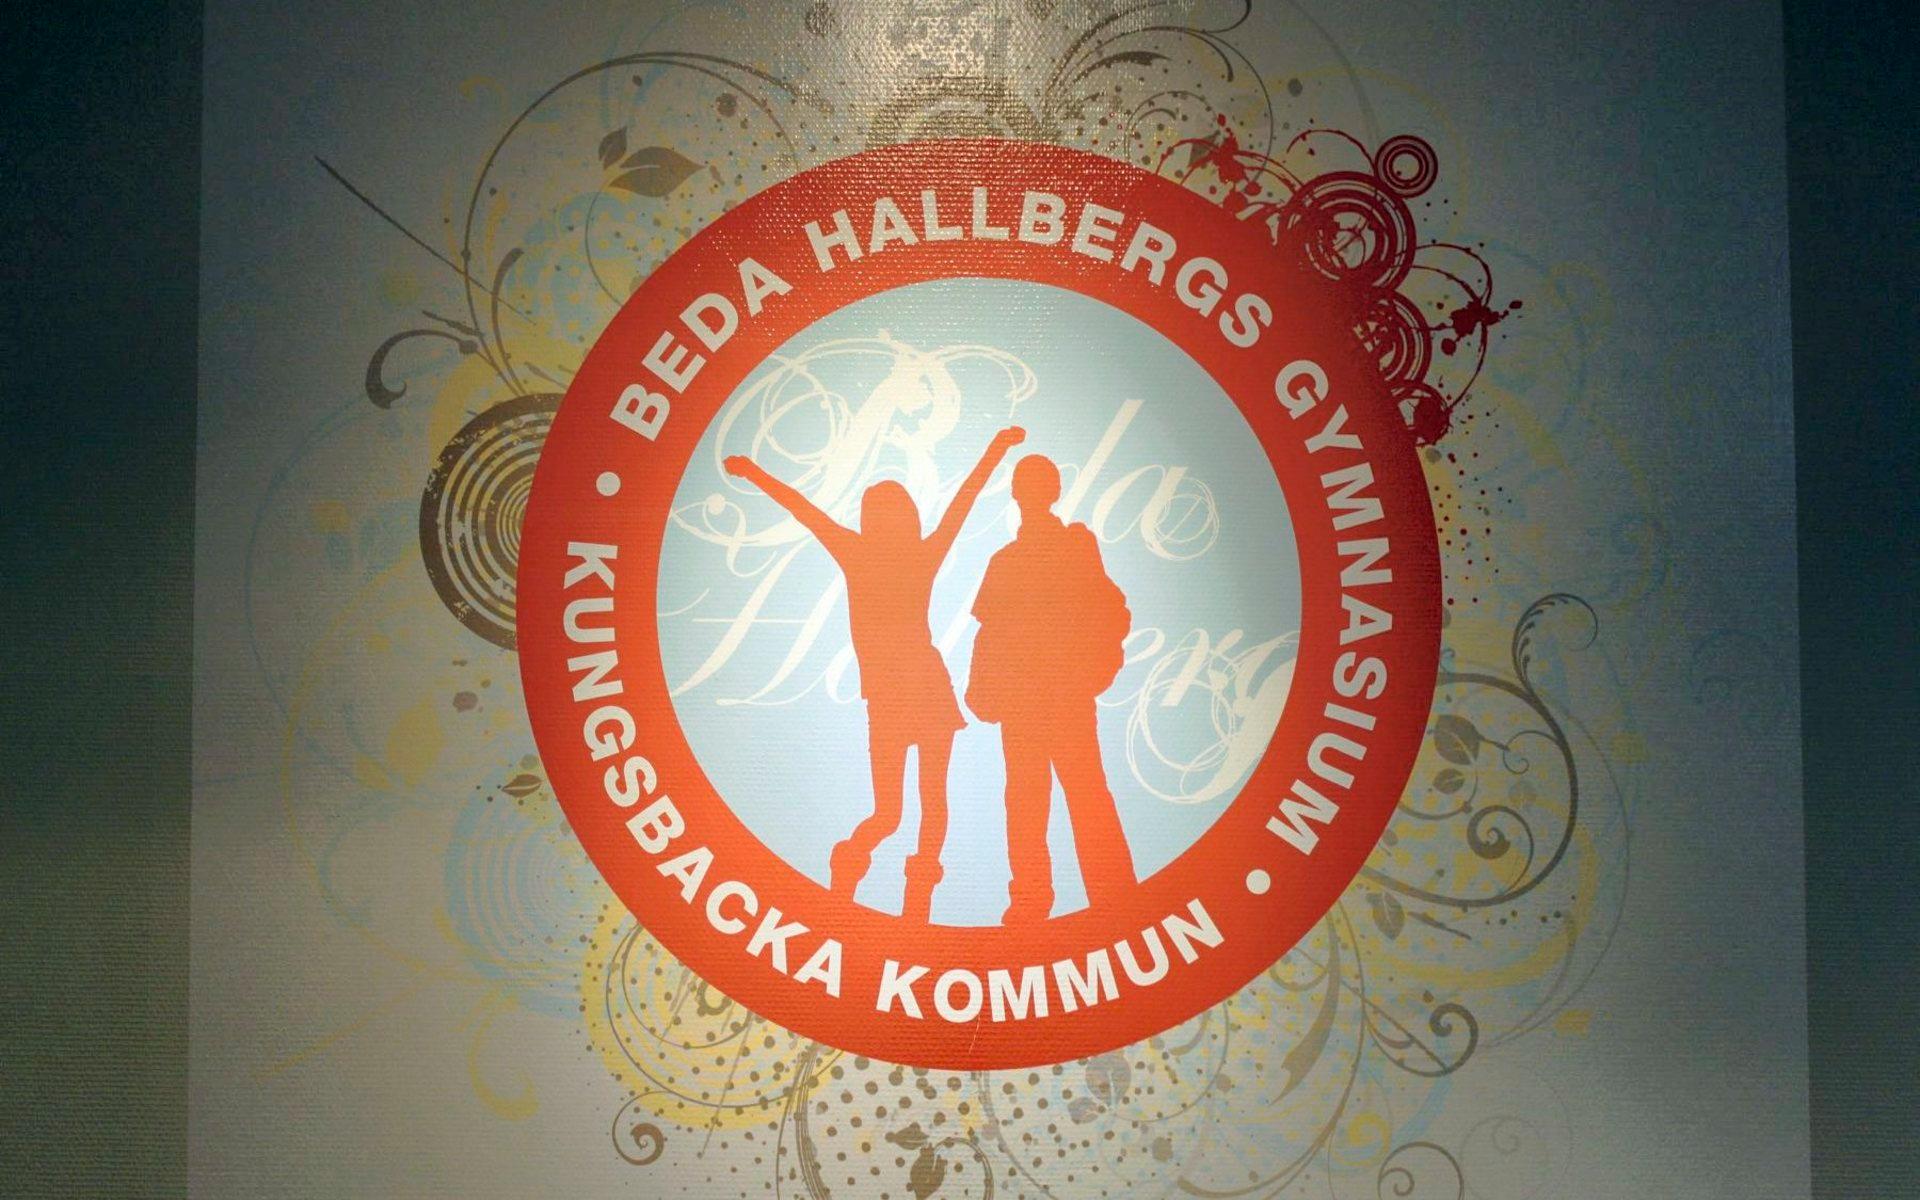 Beda Hallbergs gymnasium läggs nu nu ner, efter tio år. 